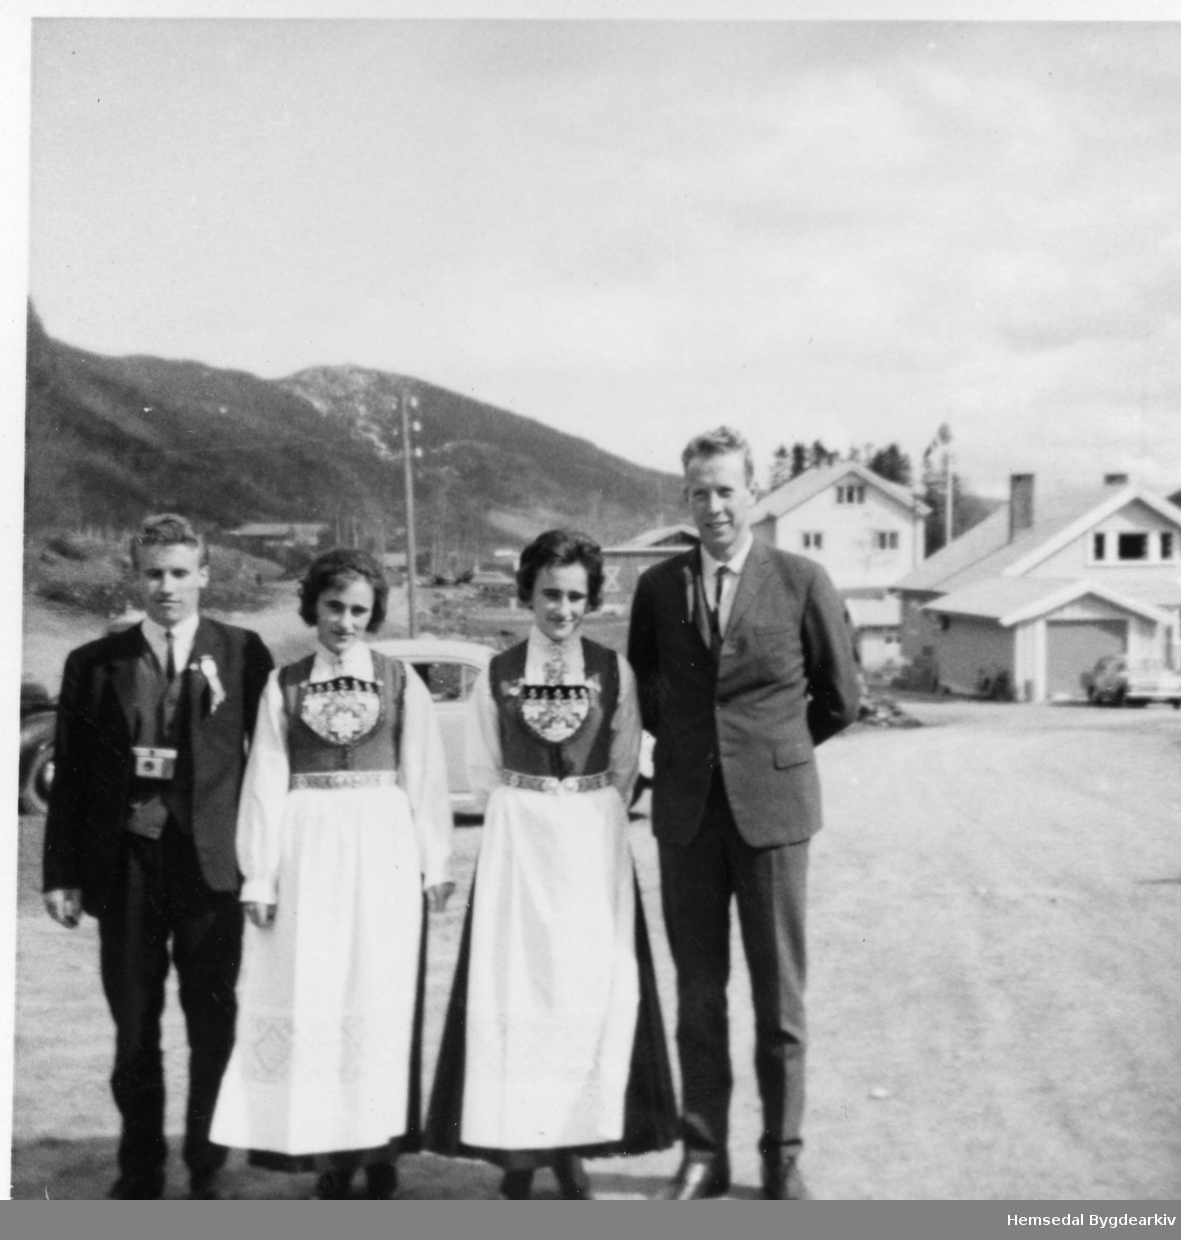 Tvillingpar frå Eidfjord i Hardanger giftar seg i Hemsedal i 1965. Biletet er teke ved Hemsedal Bygdaheim.
Frå venstre: Syver Tuv og Haldis Ribær; Bjørg Ribær og Magne Pettersen. Haldis og Bjørg arbeidde på Hemsedal Bygdaheim tidleg på 1960-talet.